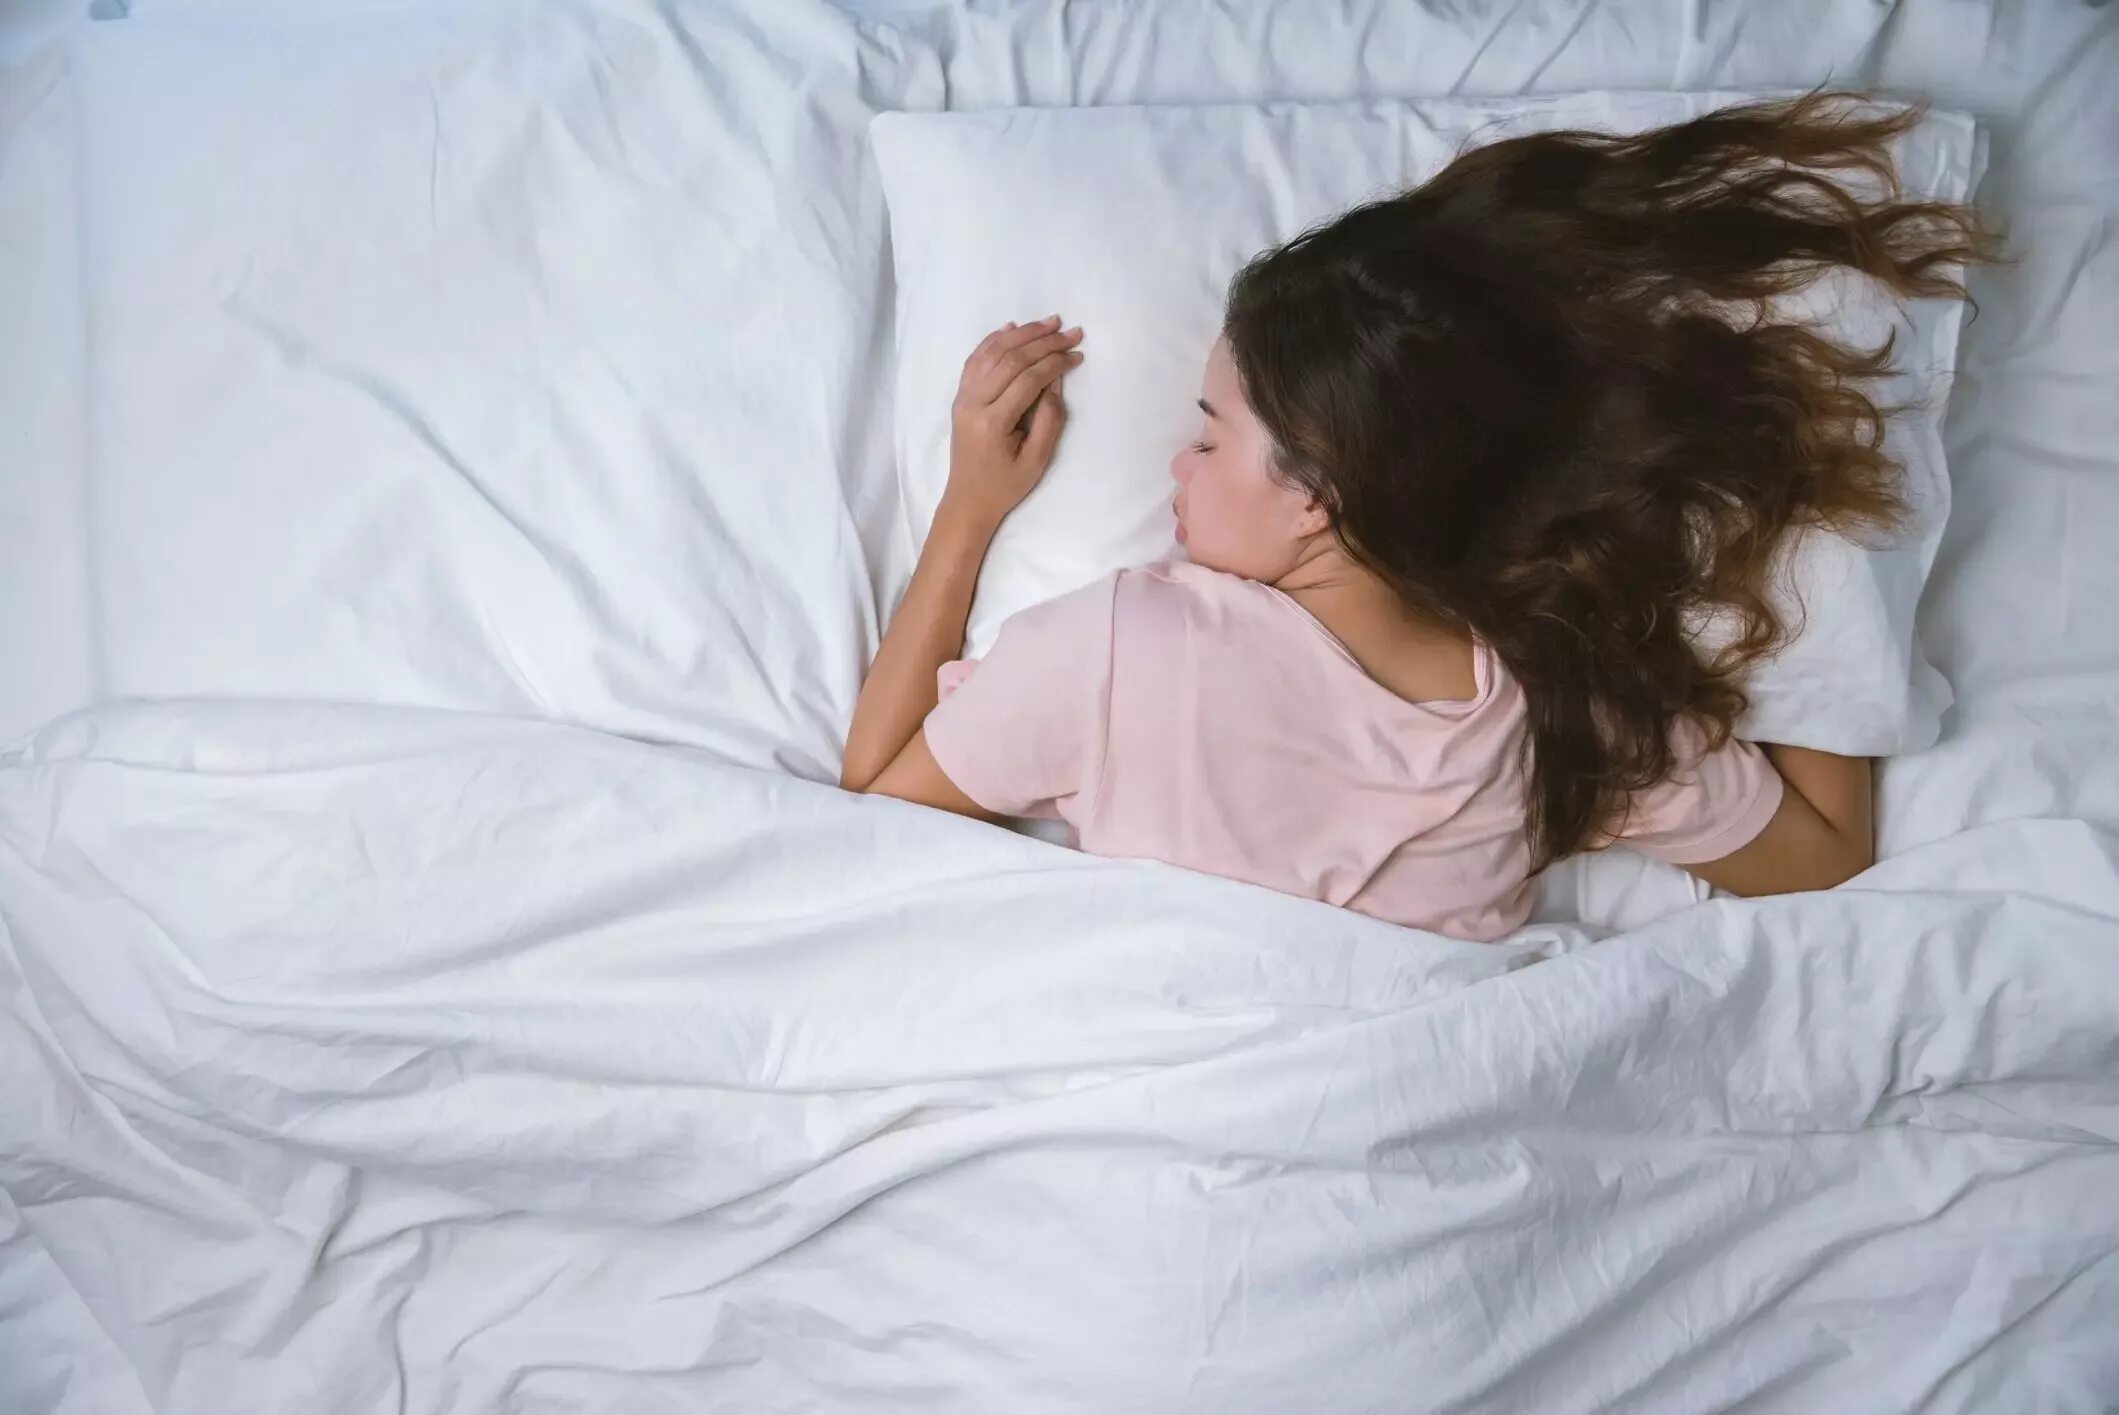 Девушка подросток в пижаме на кровати. Спящий подросток девочка. Спящие длинные волосы